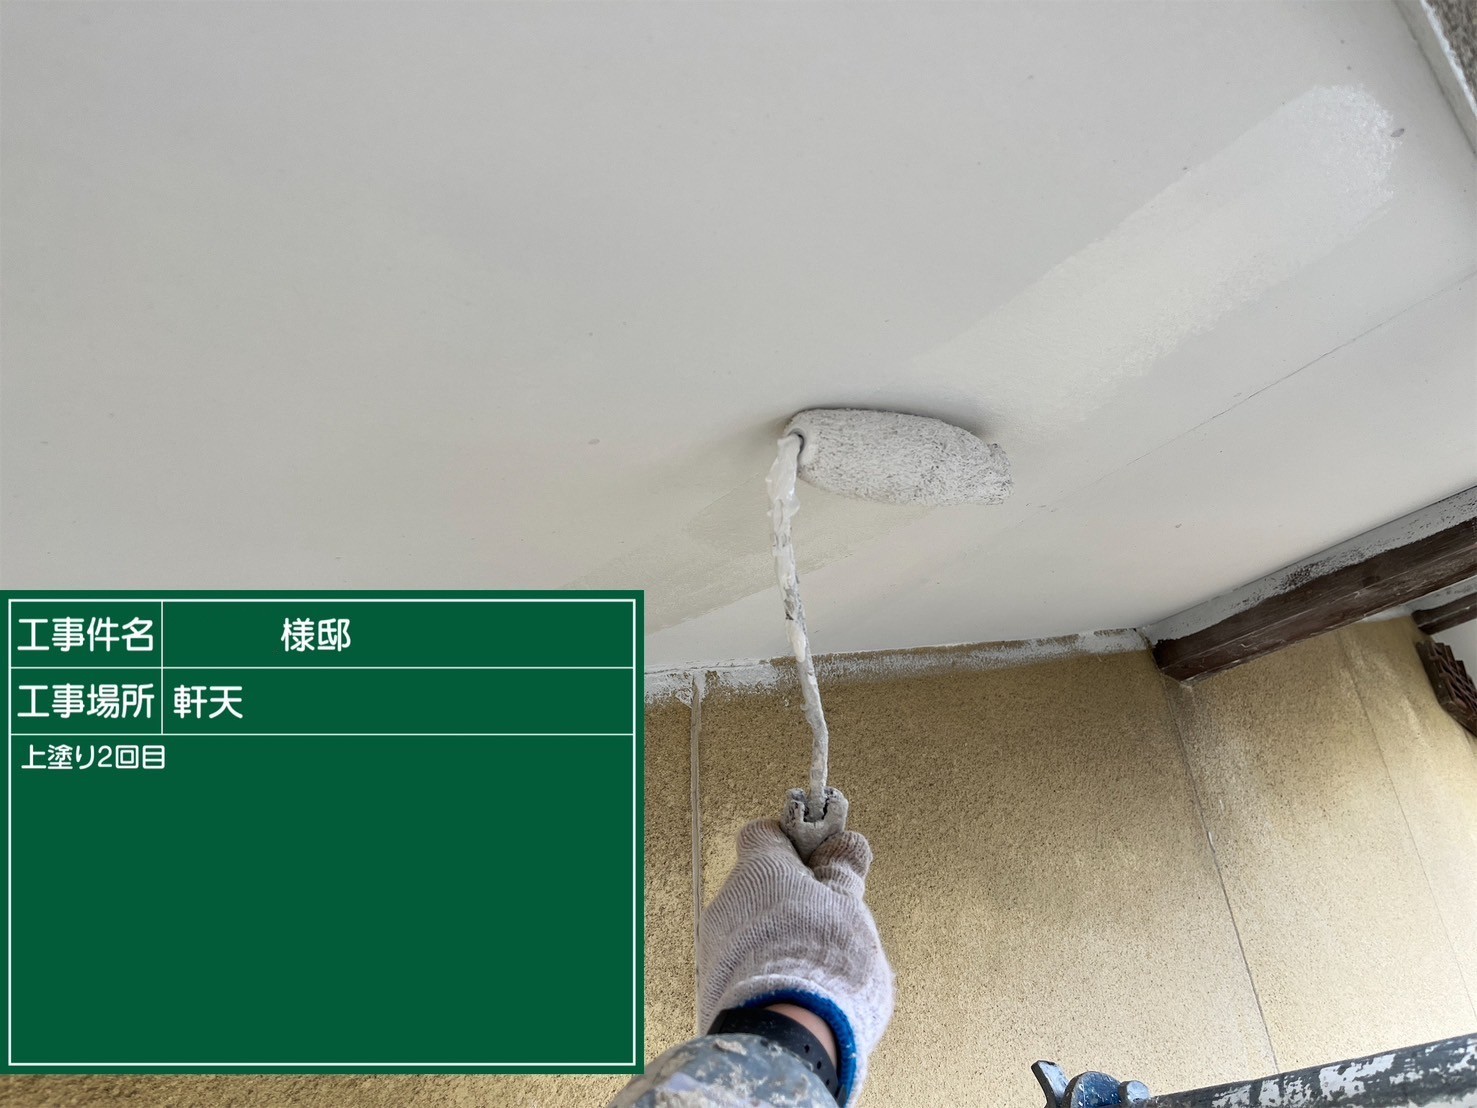 福岡県太宰府市朱雀のH様借家でご希望されていた15年以上の耐久があるエシカルプロクールのシリコン塗料とピュアピュアシリコンで屋根と外壁をそれぞれ塗装していきます。2/23着工です。【HPより】